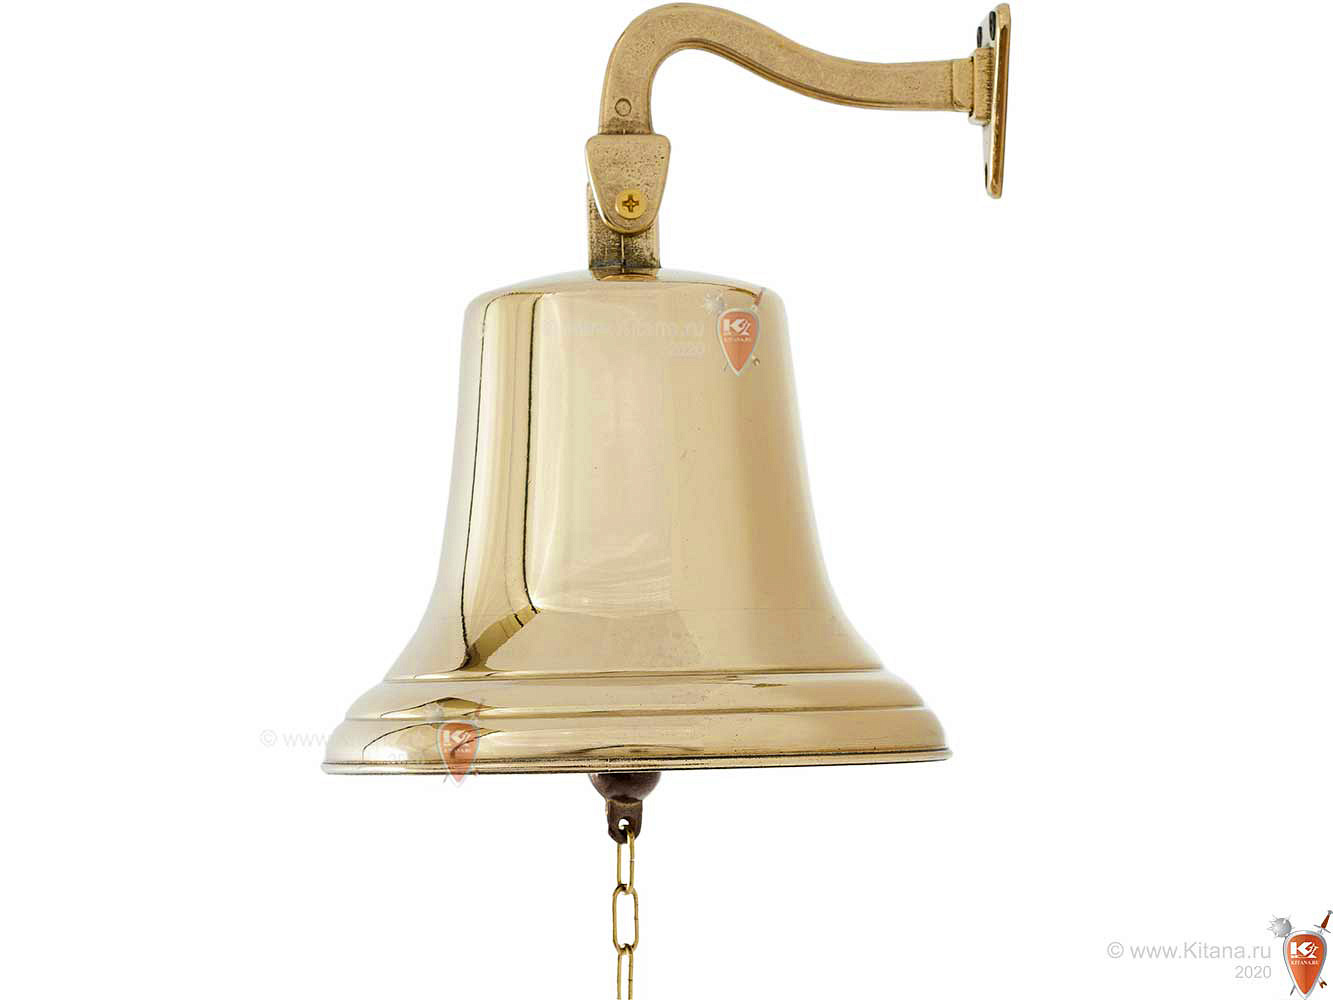 Звон корабельного колокола 5 букв. Судовой колокол – рында. Колокол Корабельный на кронштейне (рында)"1842", диам. 18см. Кронштейн для рынды корабельной. Корабельный колокол для детей.